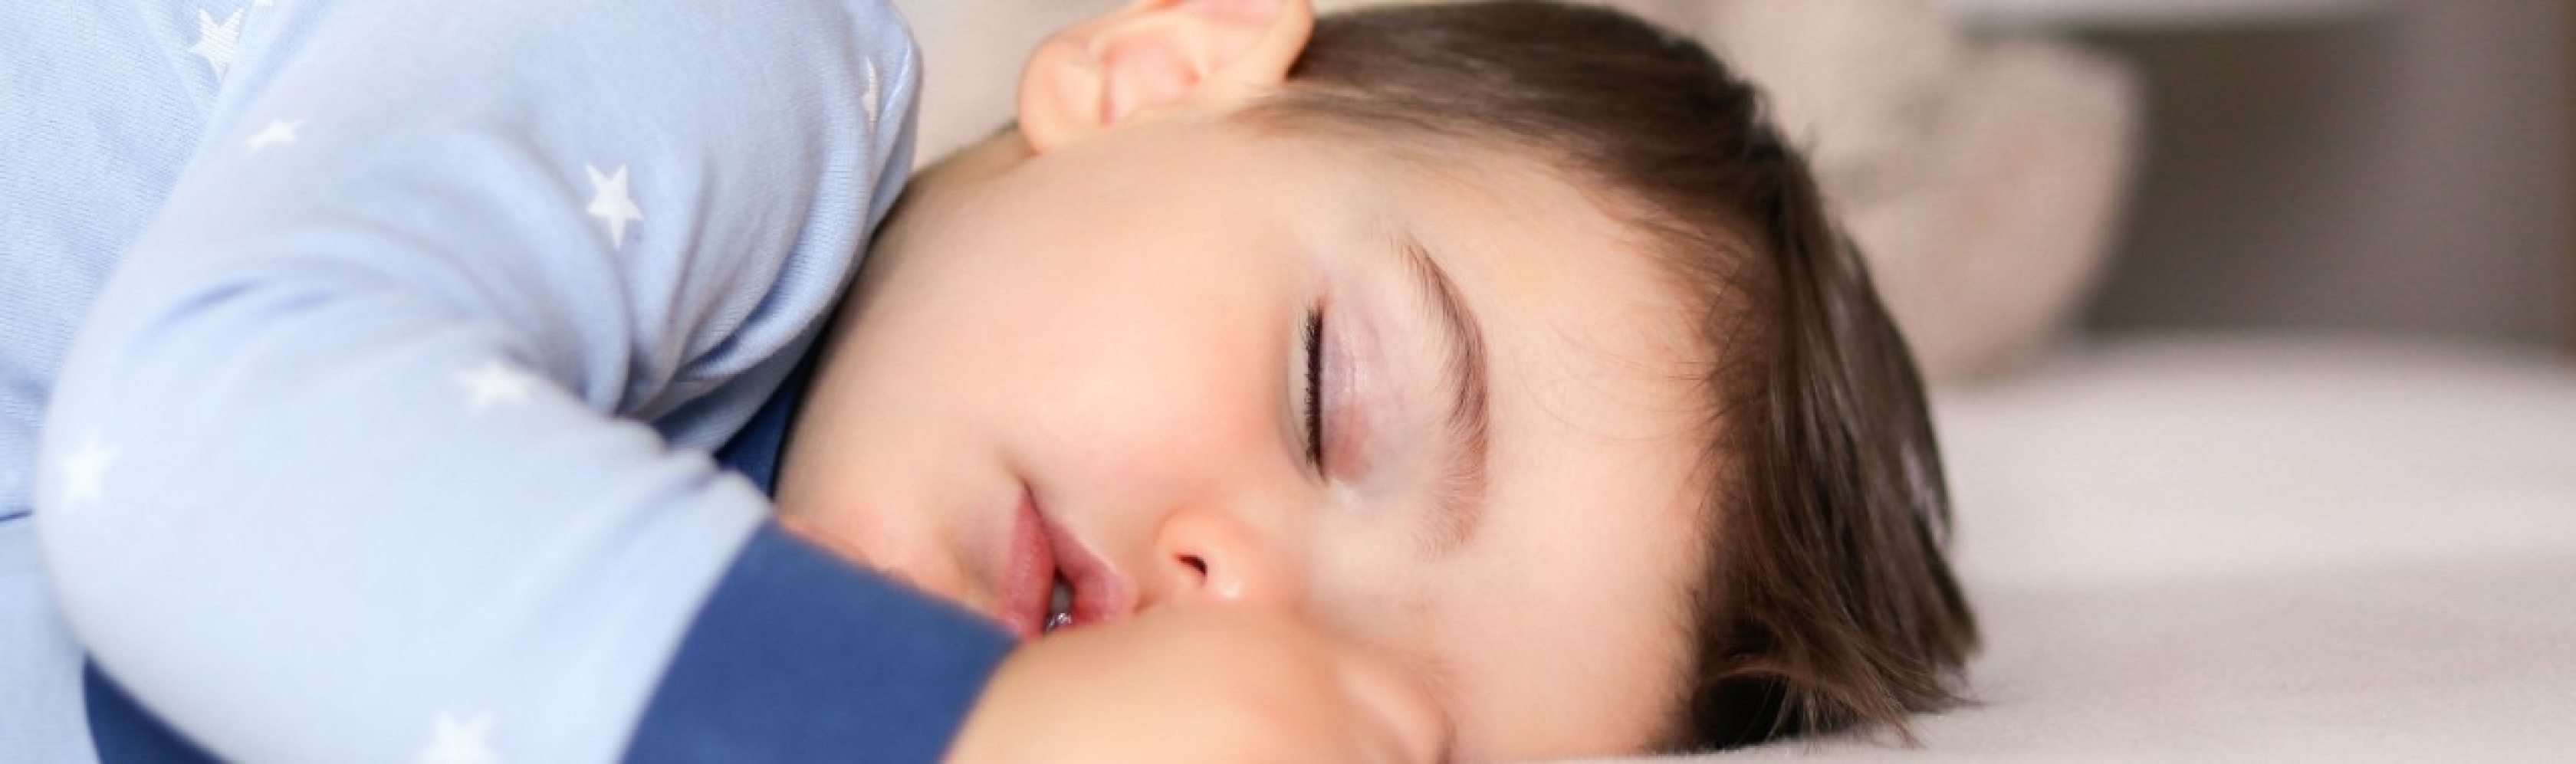 Un bambino dorme profondamente. Trascorriamo più di un terzo della nostra vita dormendo, ma con il passare degli anni il ritmo del sonno cambia sensibilmente.